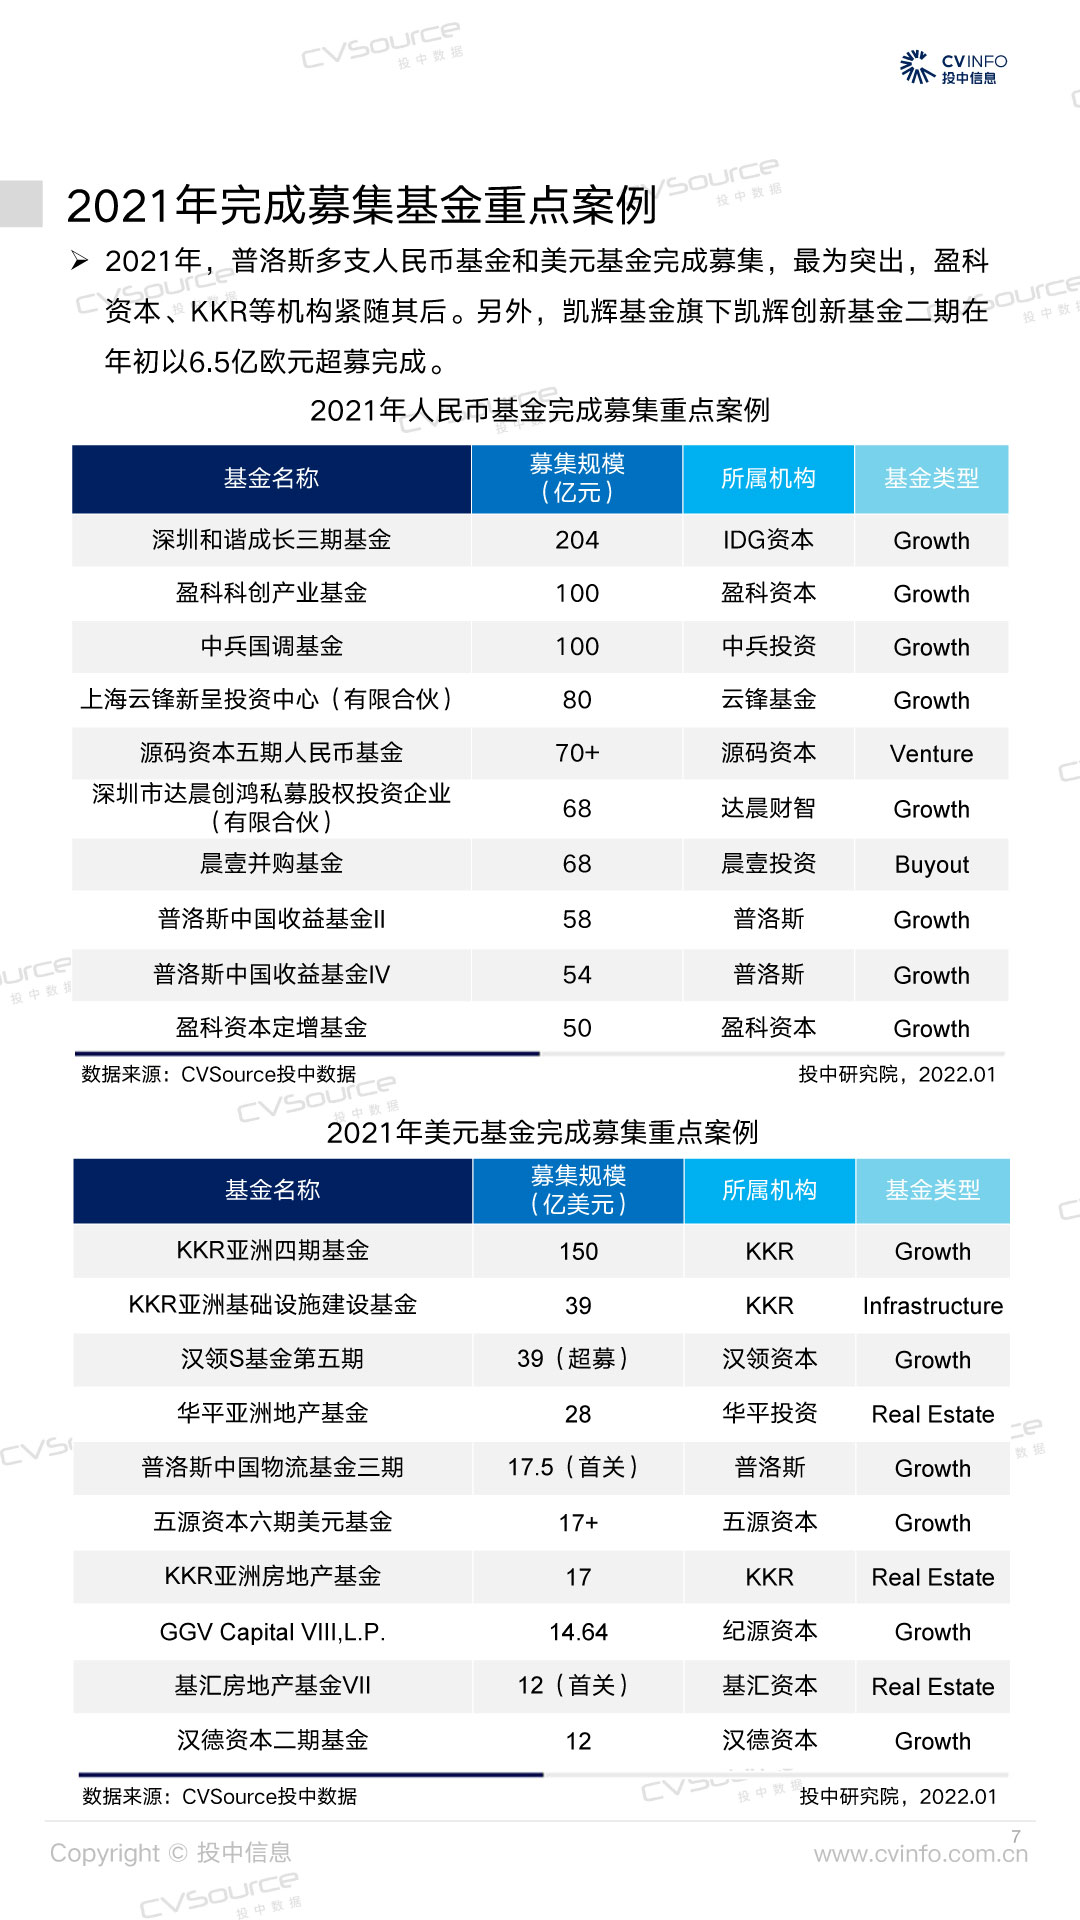 2021年中国创业投资及私募股权市场统计分析报告-7.jpg